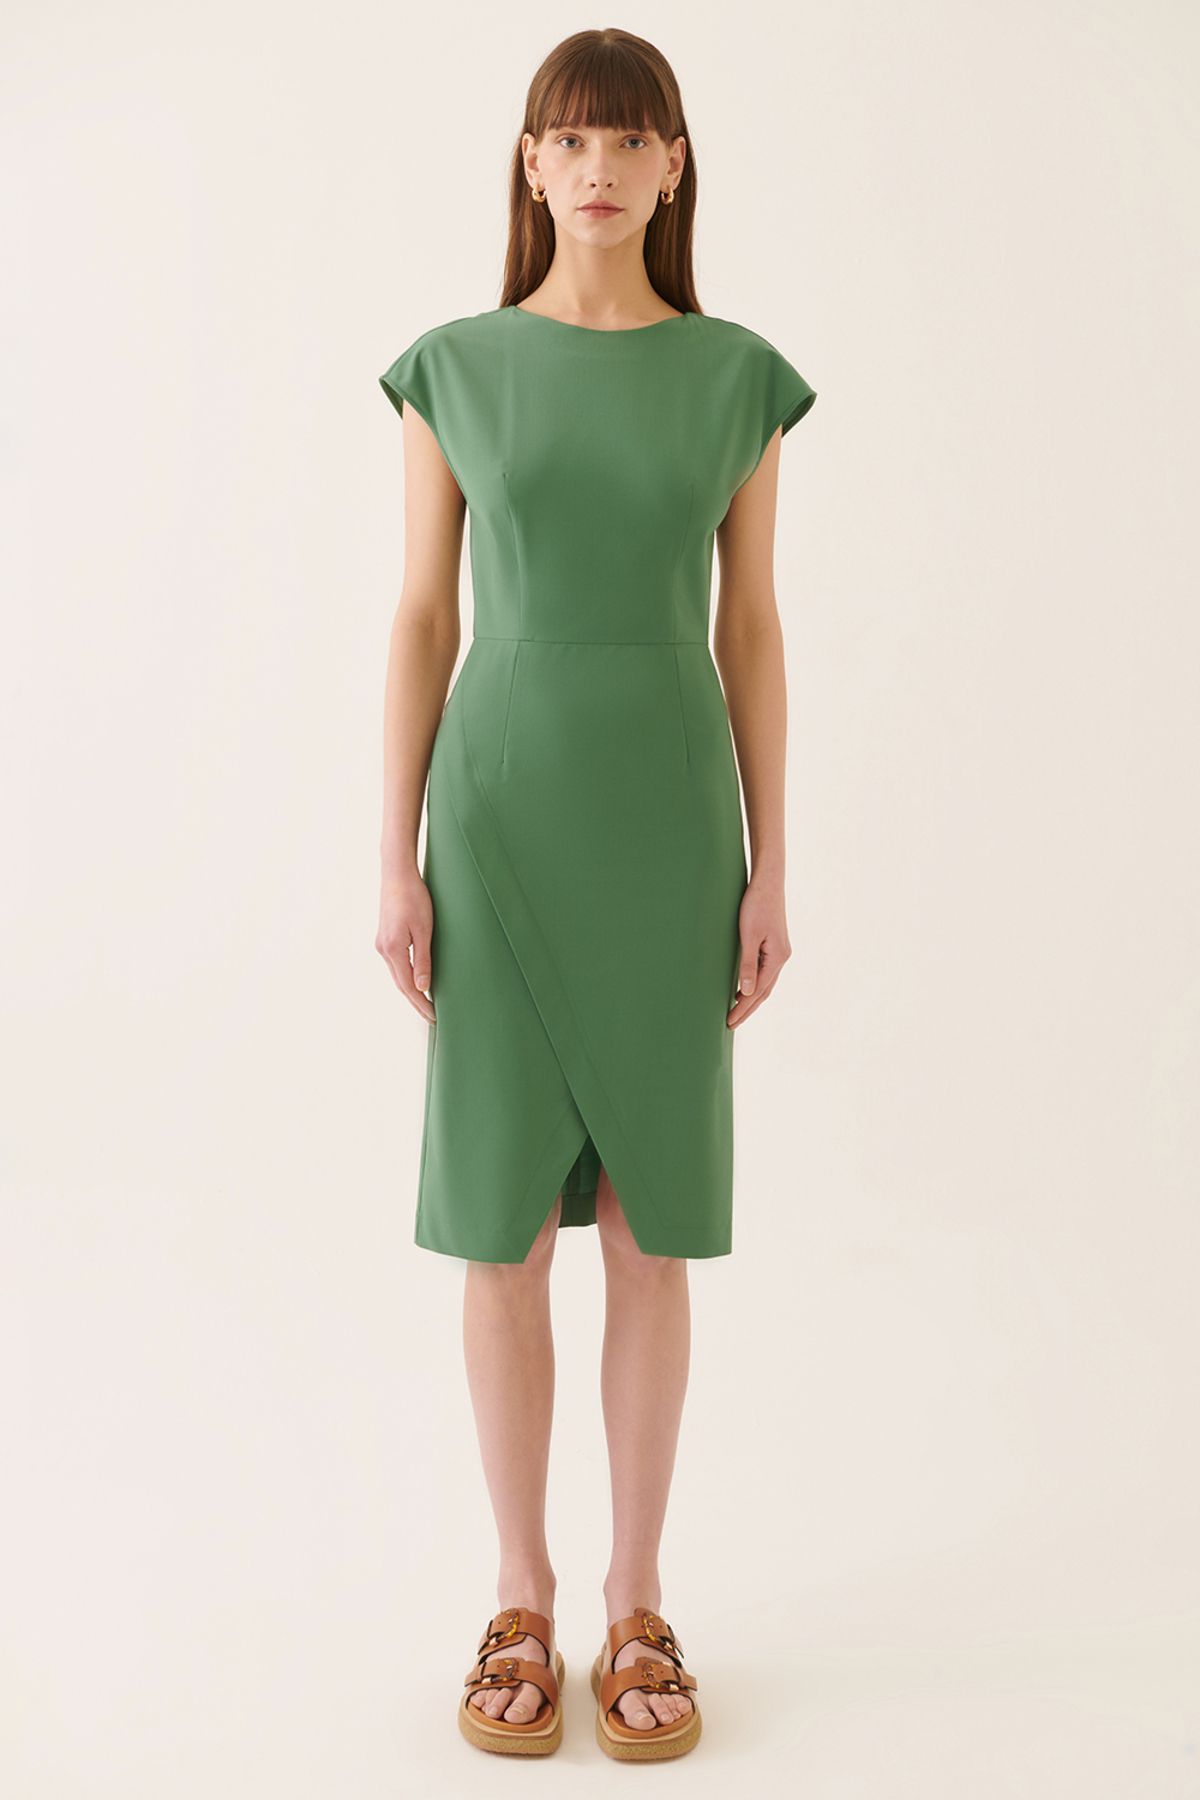 Perspective Regular Fit Kayık Yaka Diz Üstü Palmiye Yeşili Renk Elbise